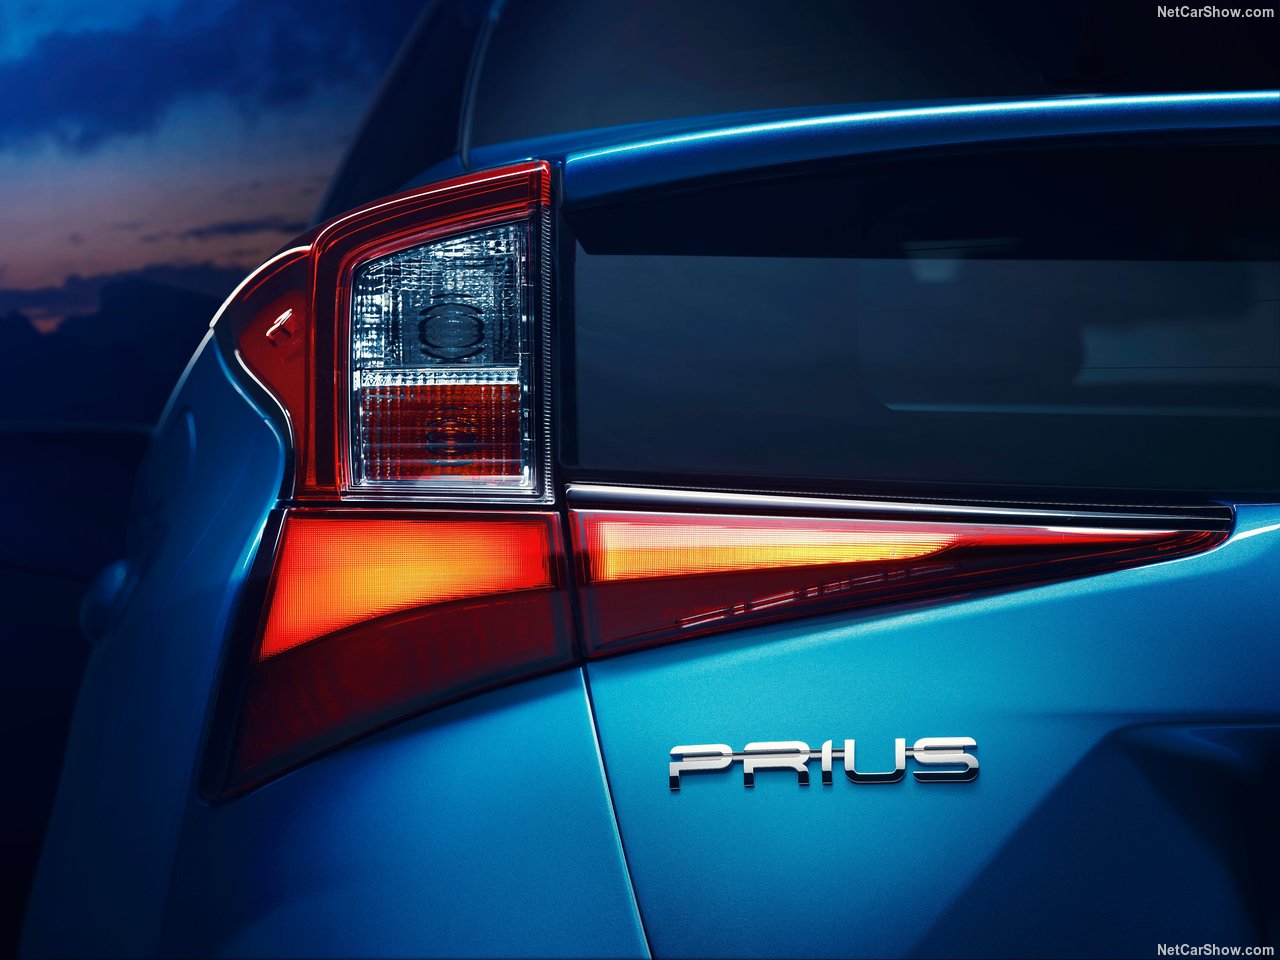 2019 Toyota Prius Los Angeles Otomobil Fuarı’nda tanıtıldı